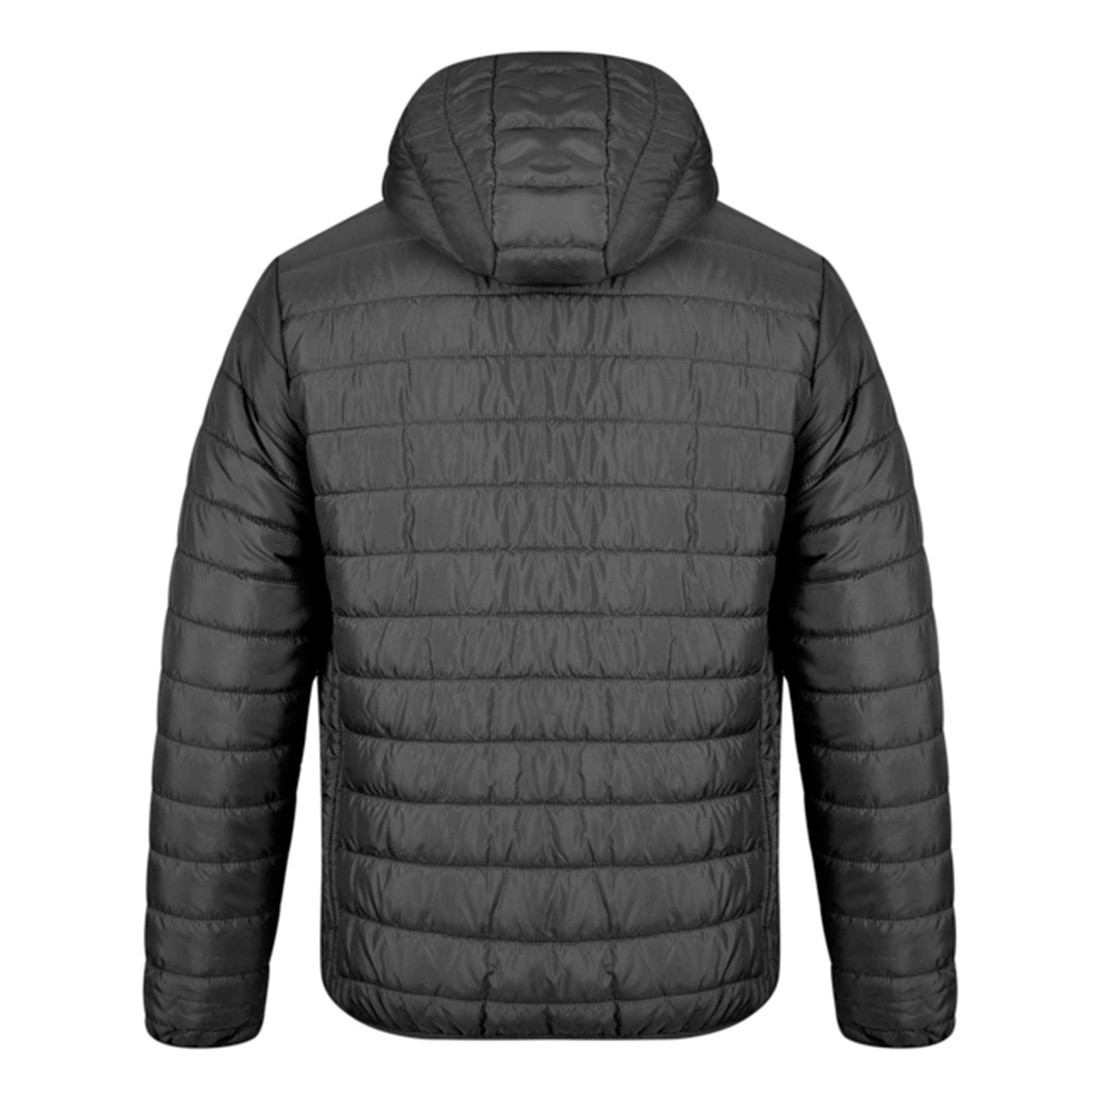 APOLLO Jacket - Safetywear